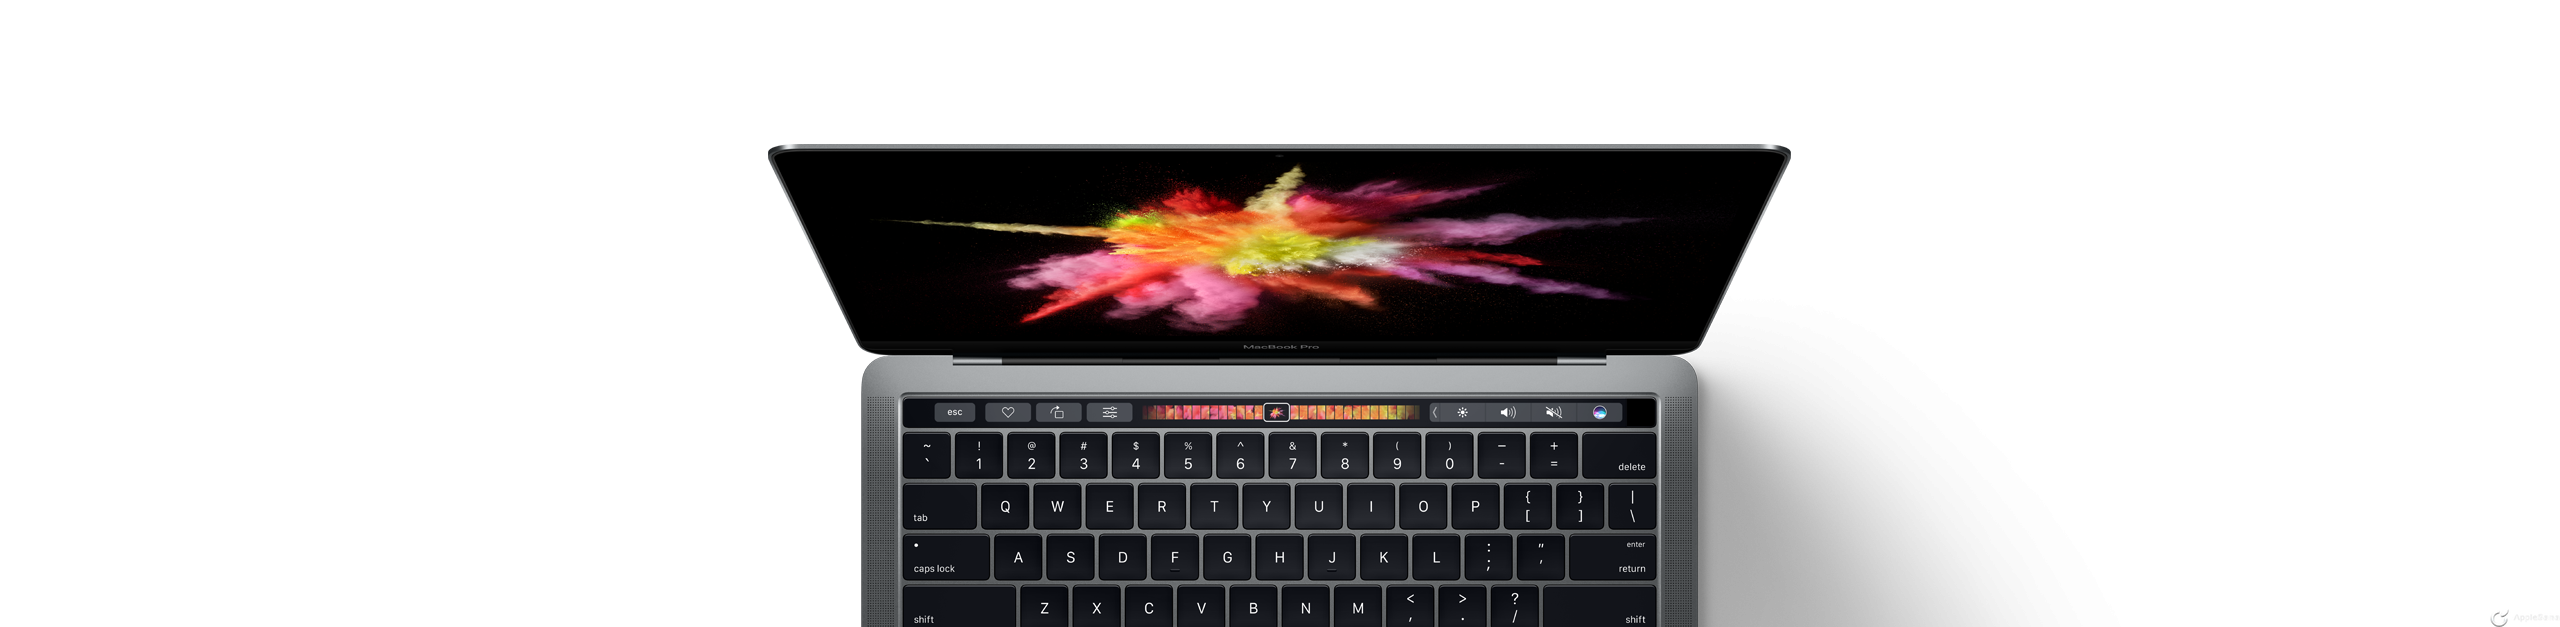 Todo lo que necesitas saber del nuevo MacBook Pro finales 2016